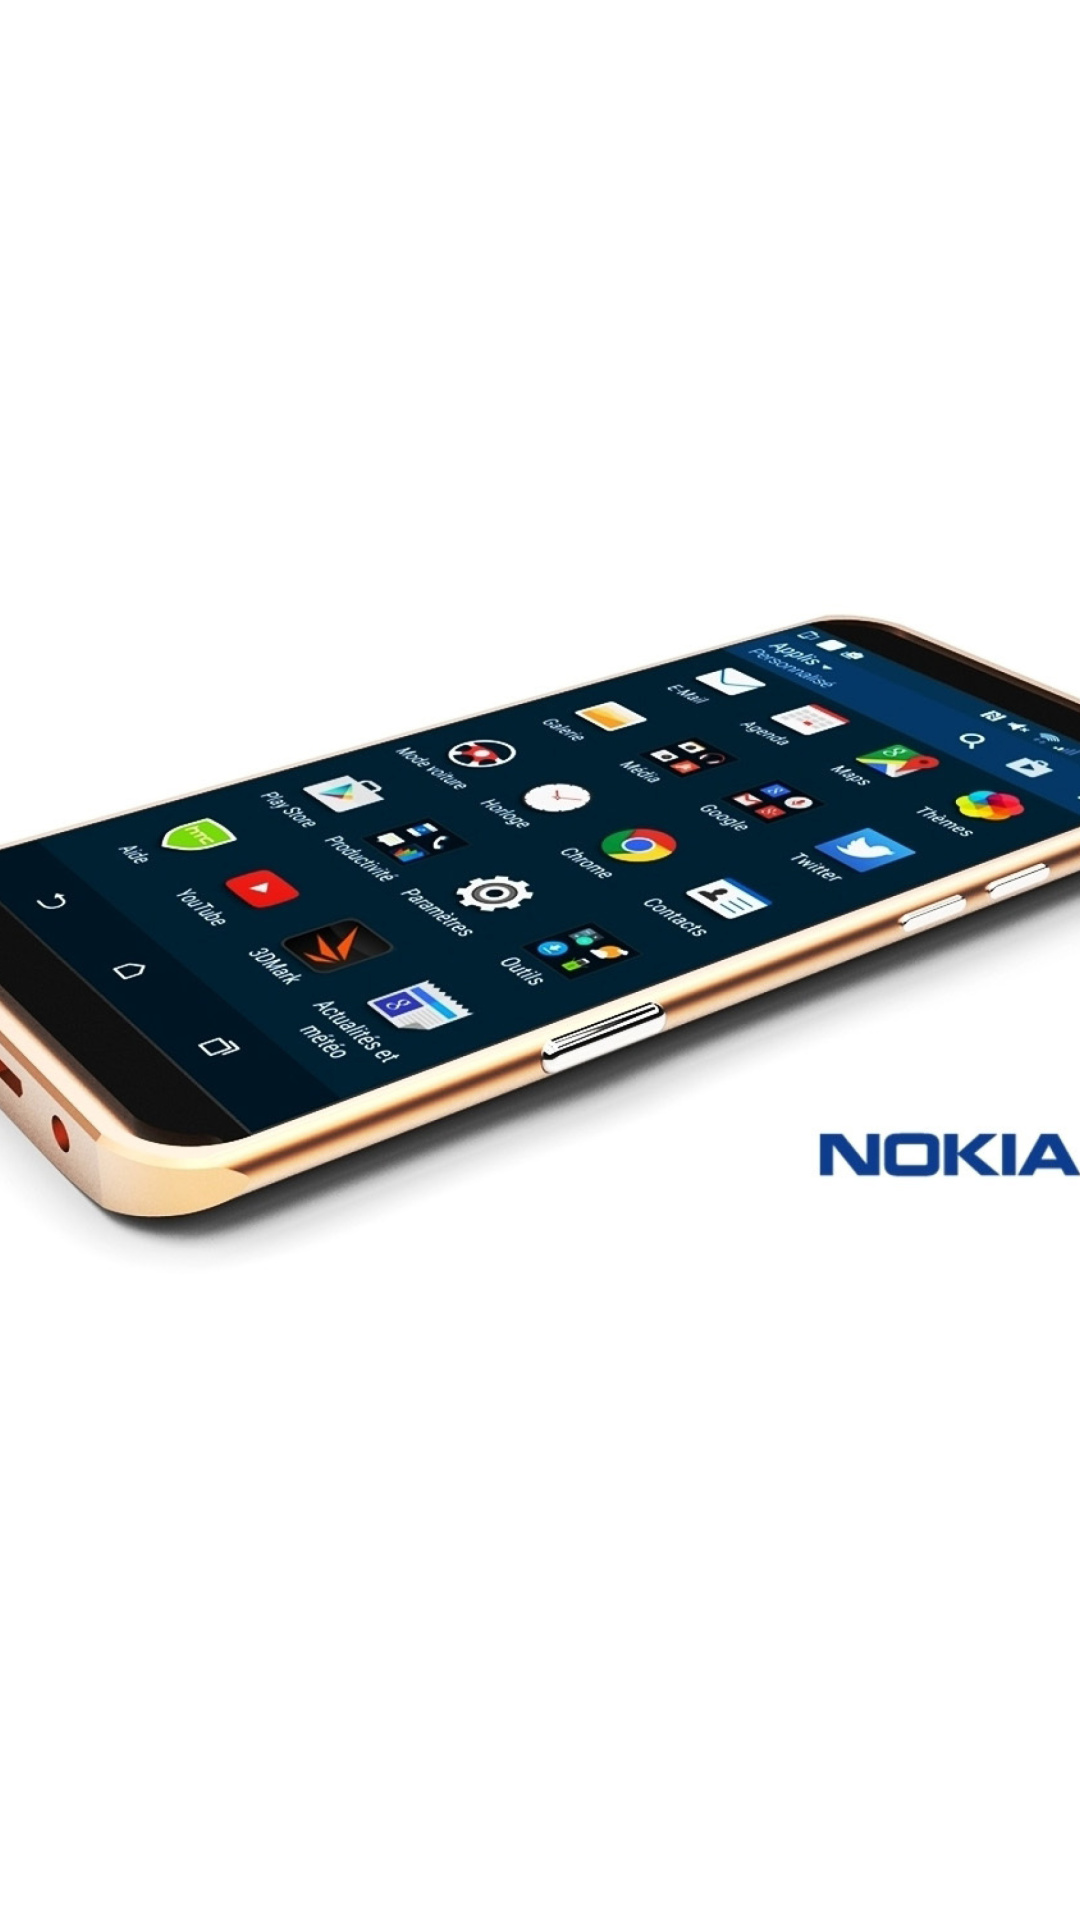 Sfondi Android Nokia A1 1080x1920